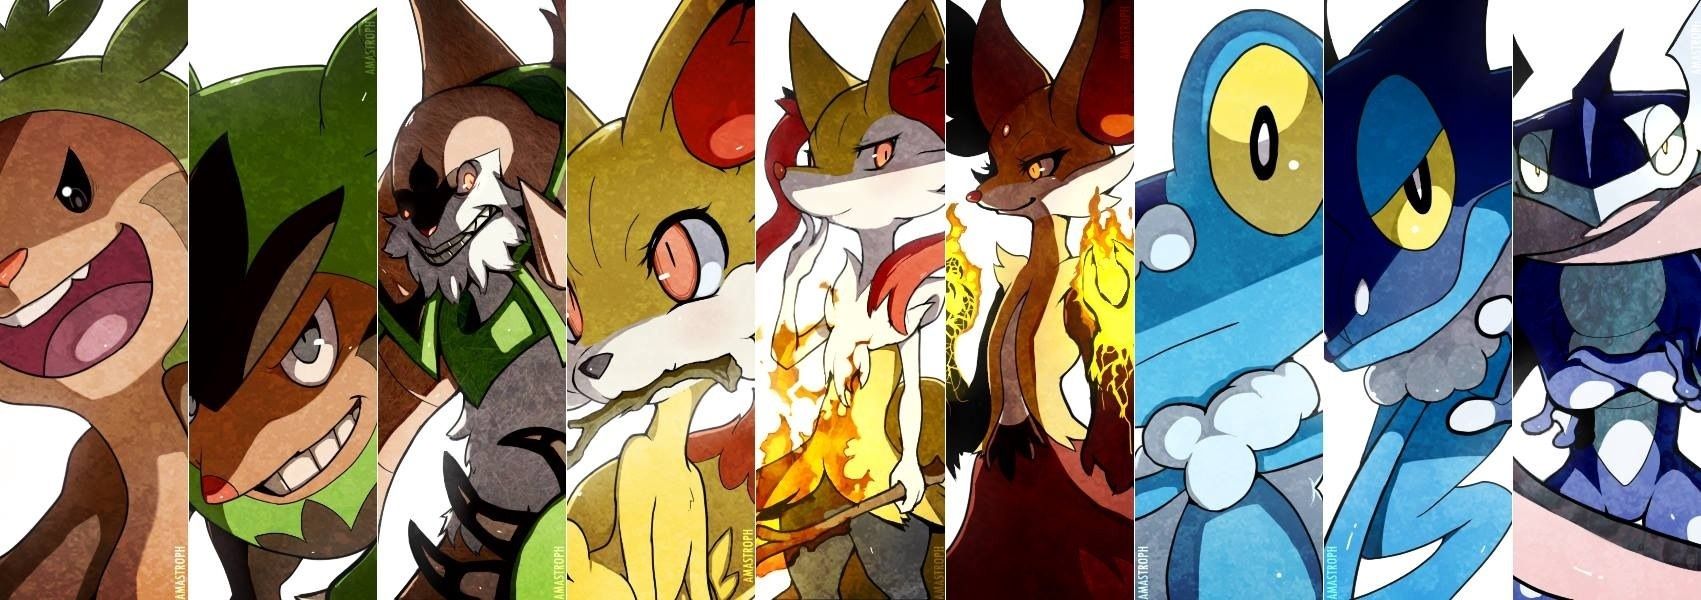 Pokemon Xy Anime Wallpaper